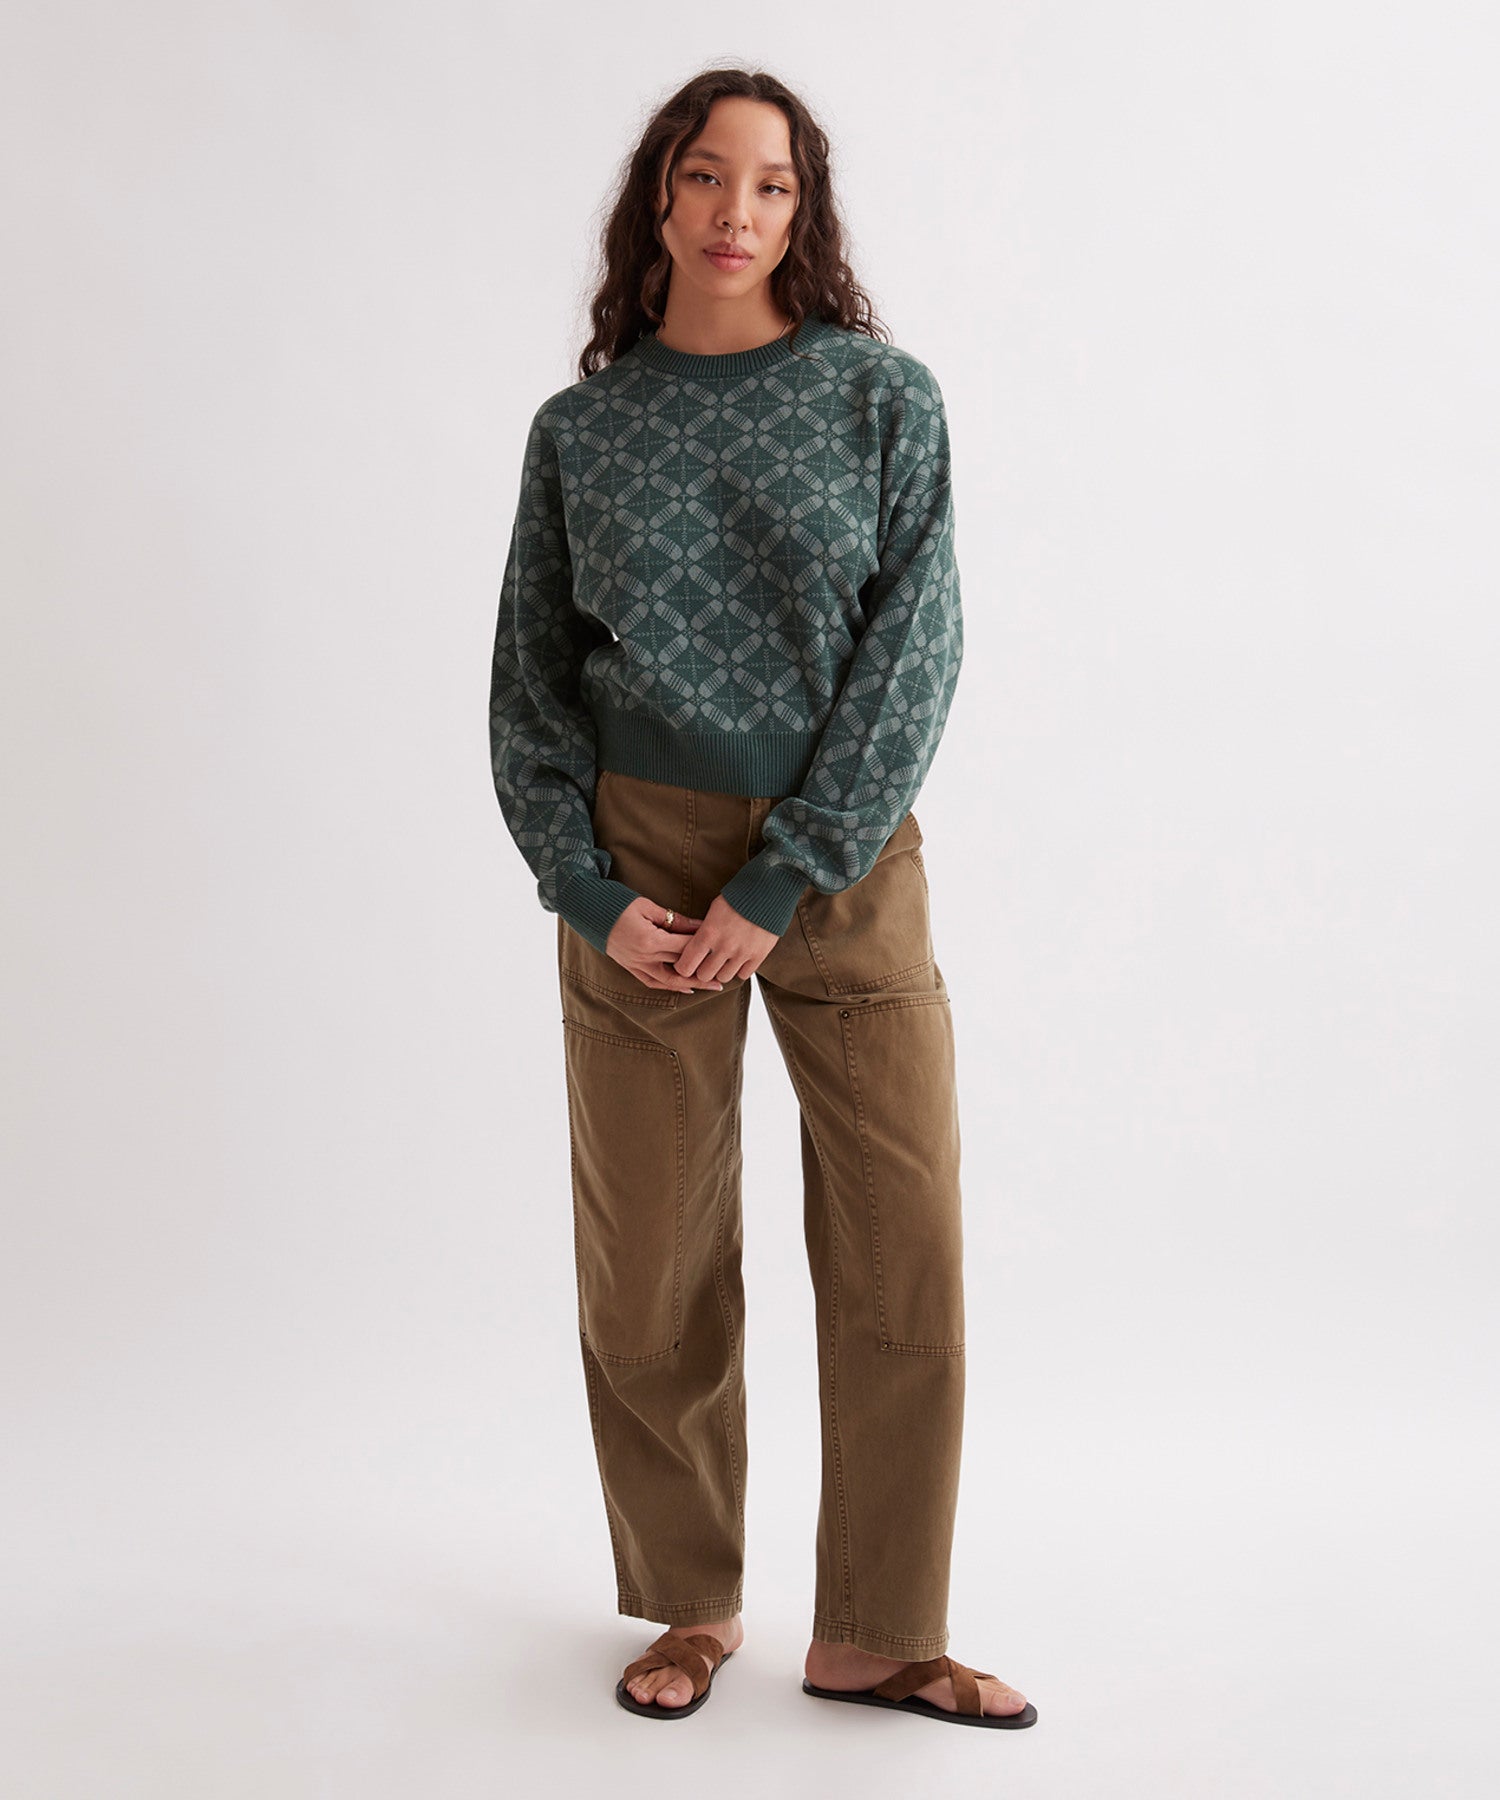 Hunakai Blockprint Sweater | Saturdays NYC Japan